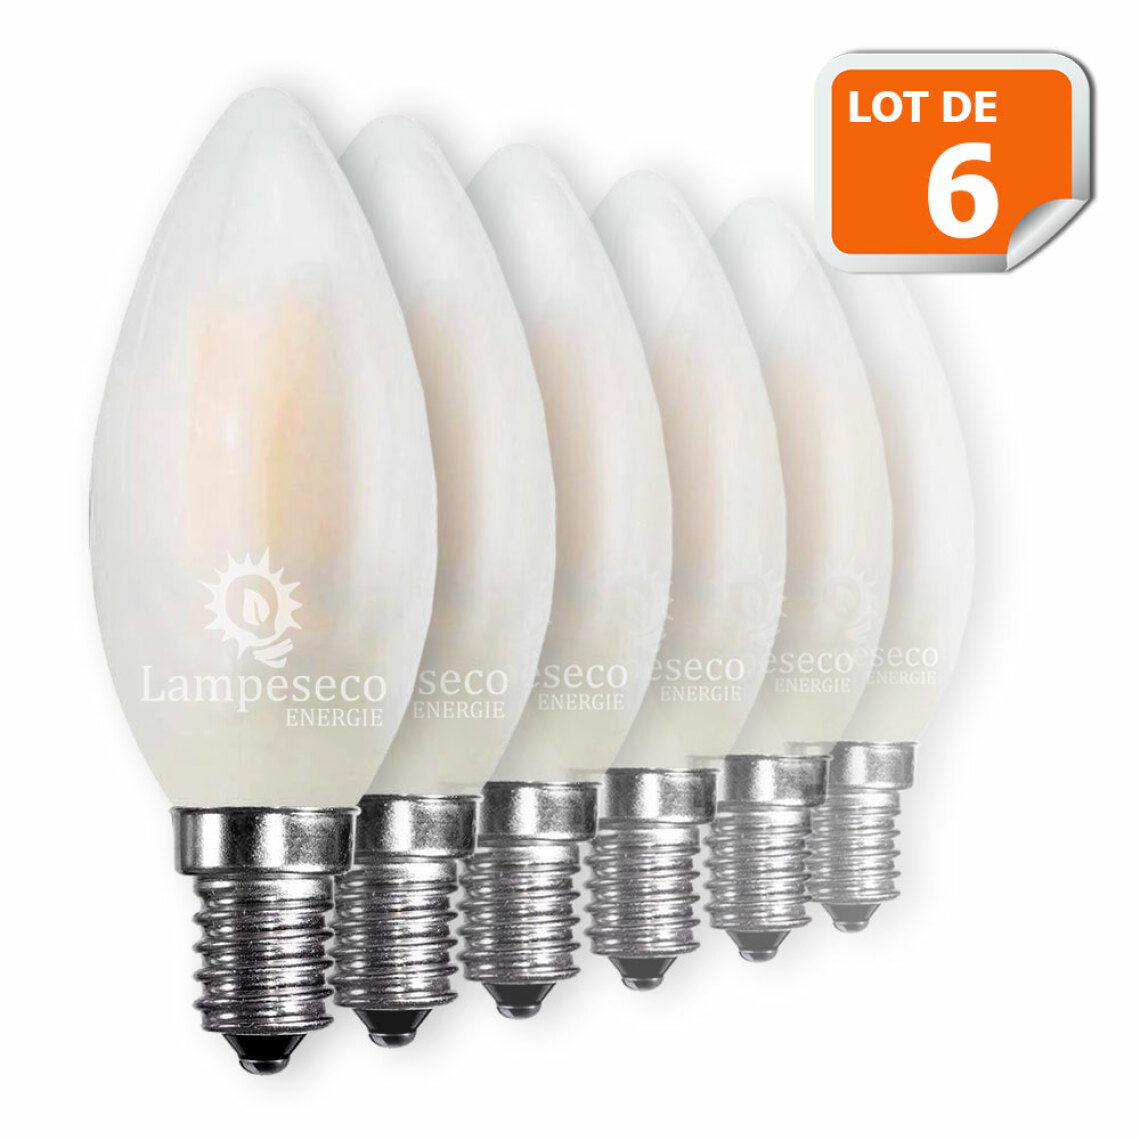 Lampesecoenergie - Lot de 6 Ampoules LED E14 Opaque Filament 4W eq 40W 400lm Blanc Chaud - Ampoules LED